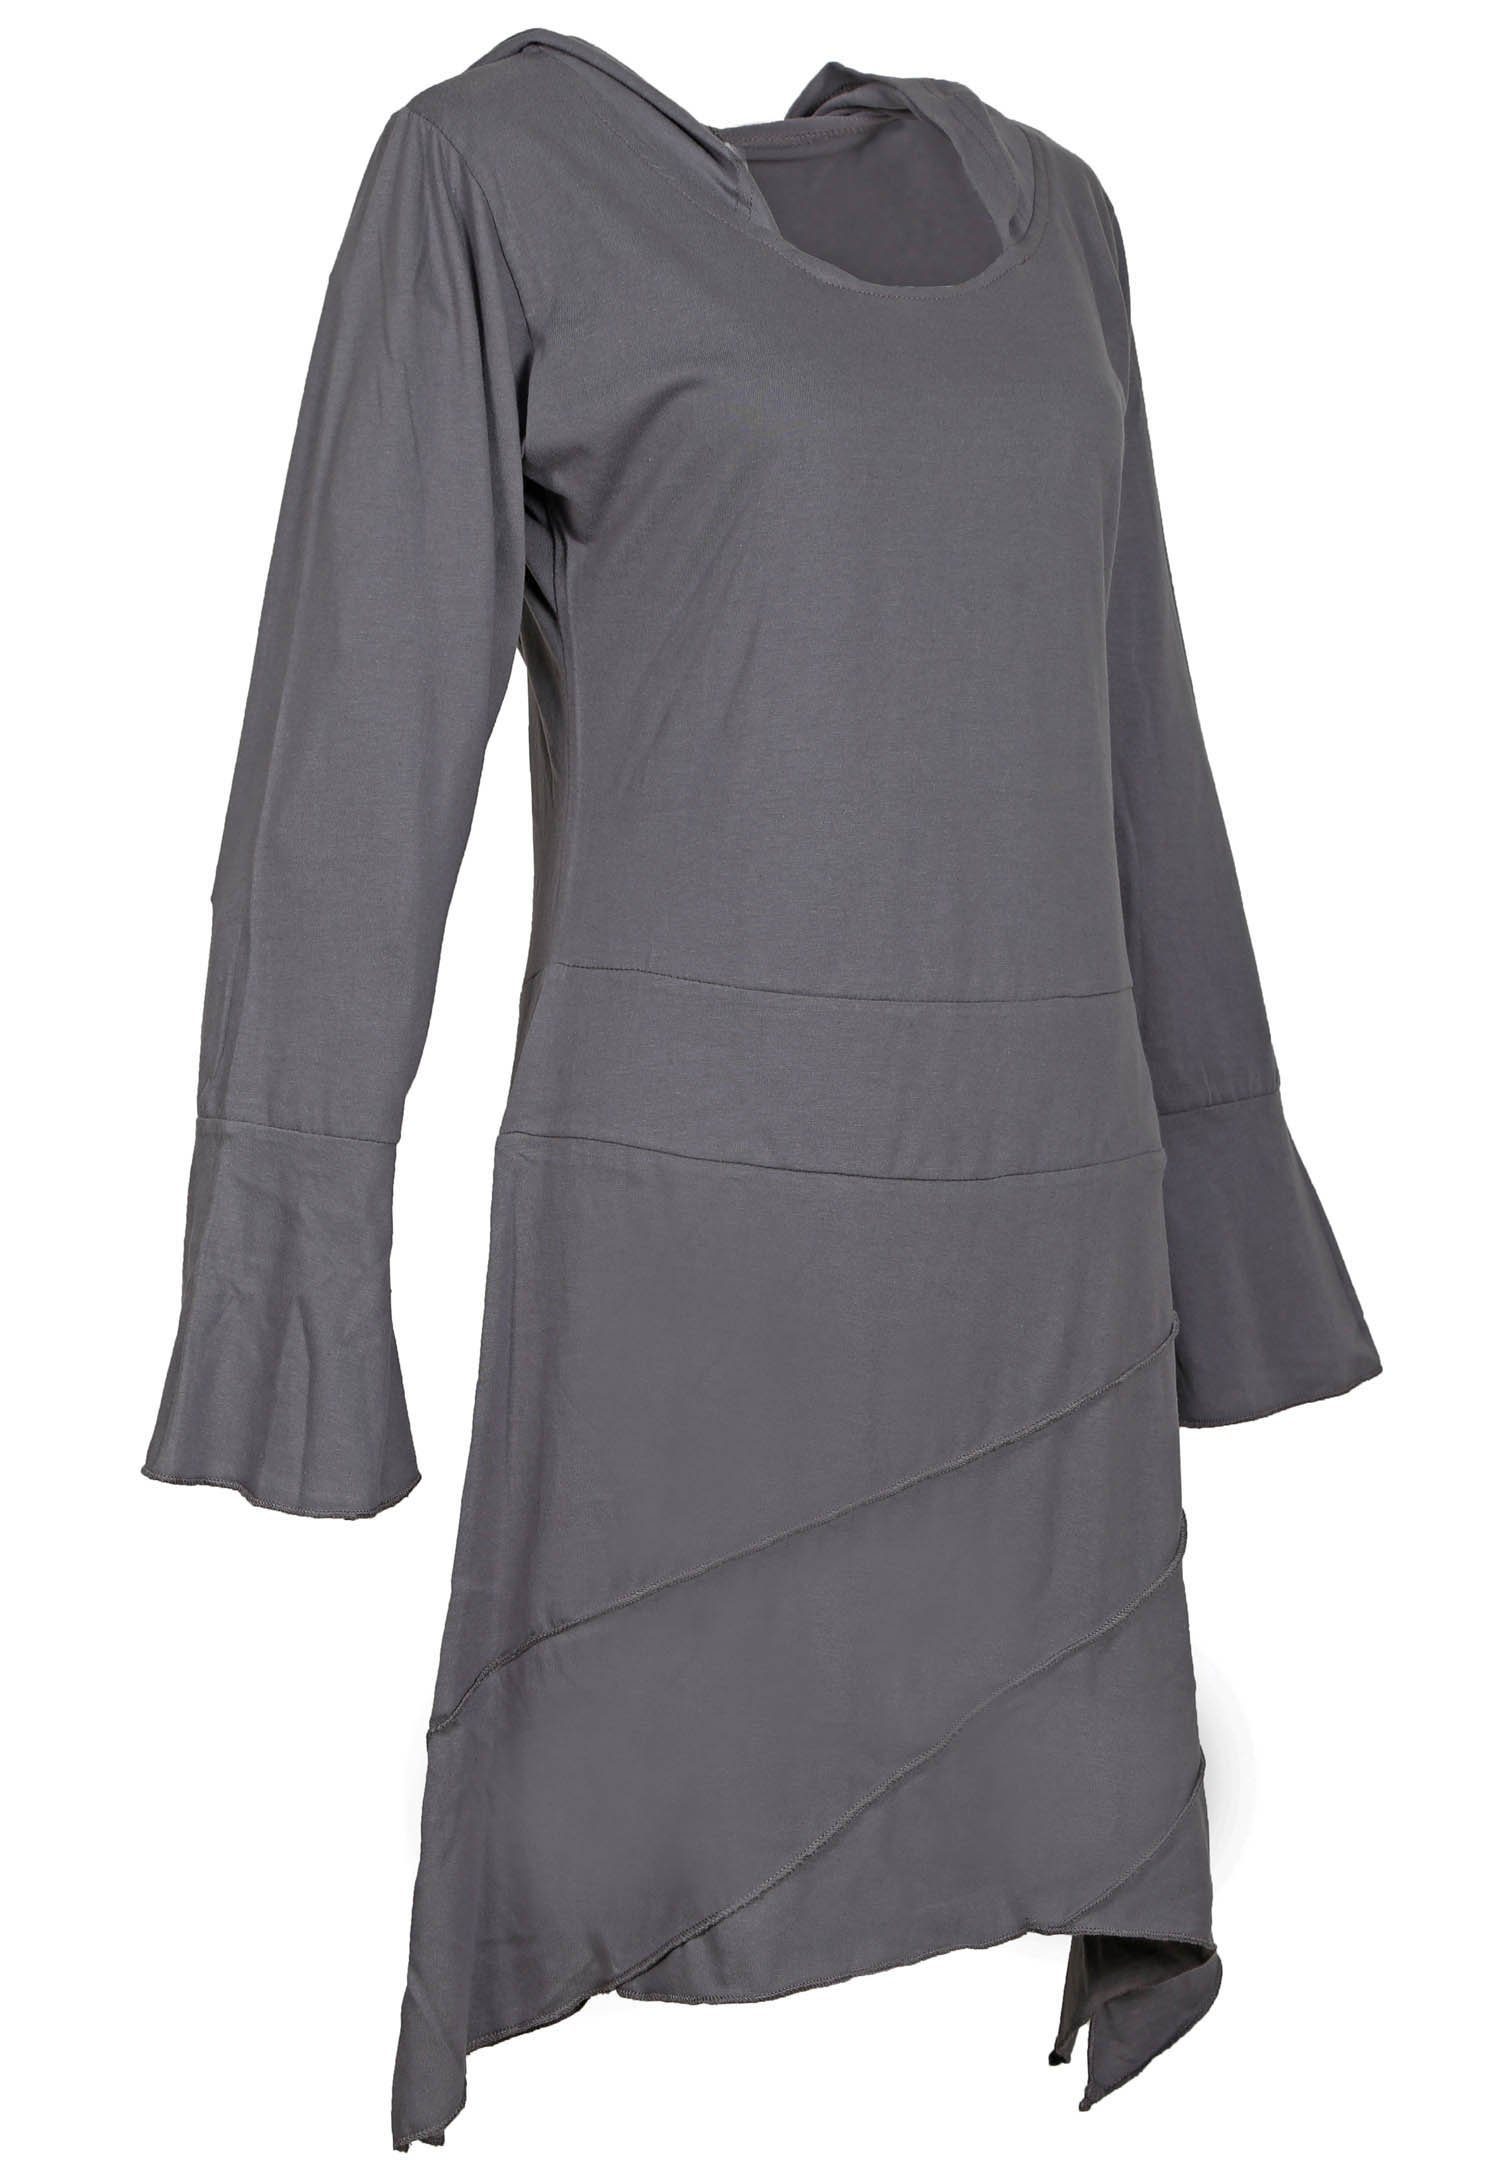 PUREWONDER aus Tunikakleid leichtem Zipfelkapuze Grau Sommerkleid Tunika mit Jersey